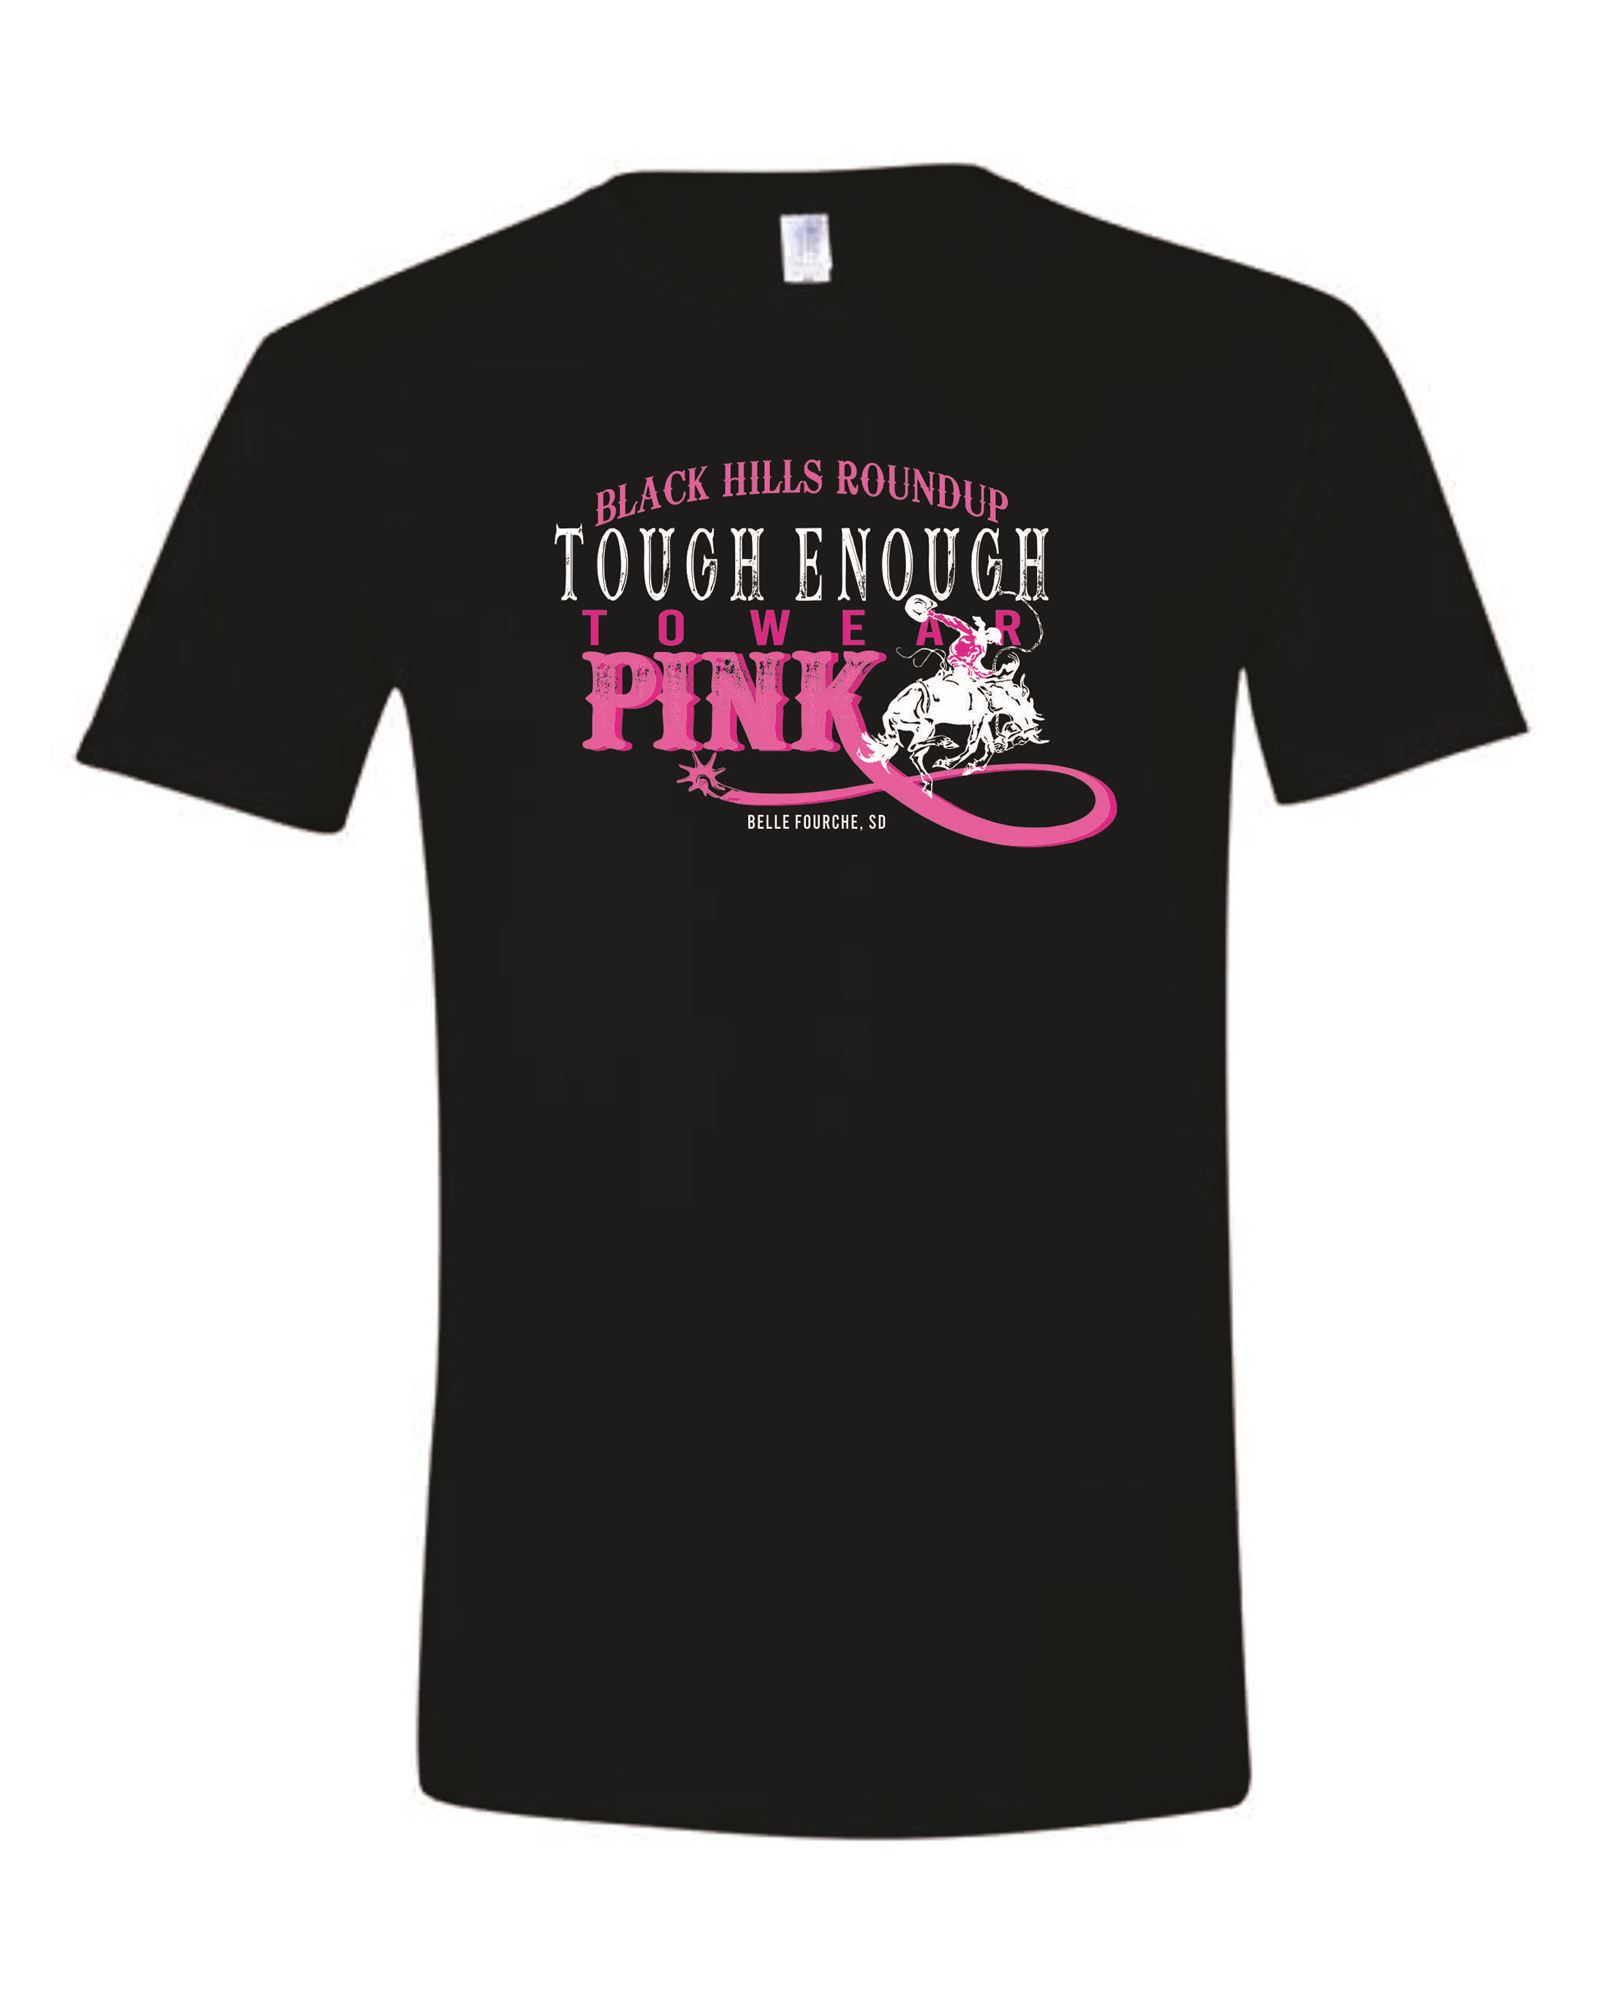 Tough Enough To Wear Pink